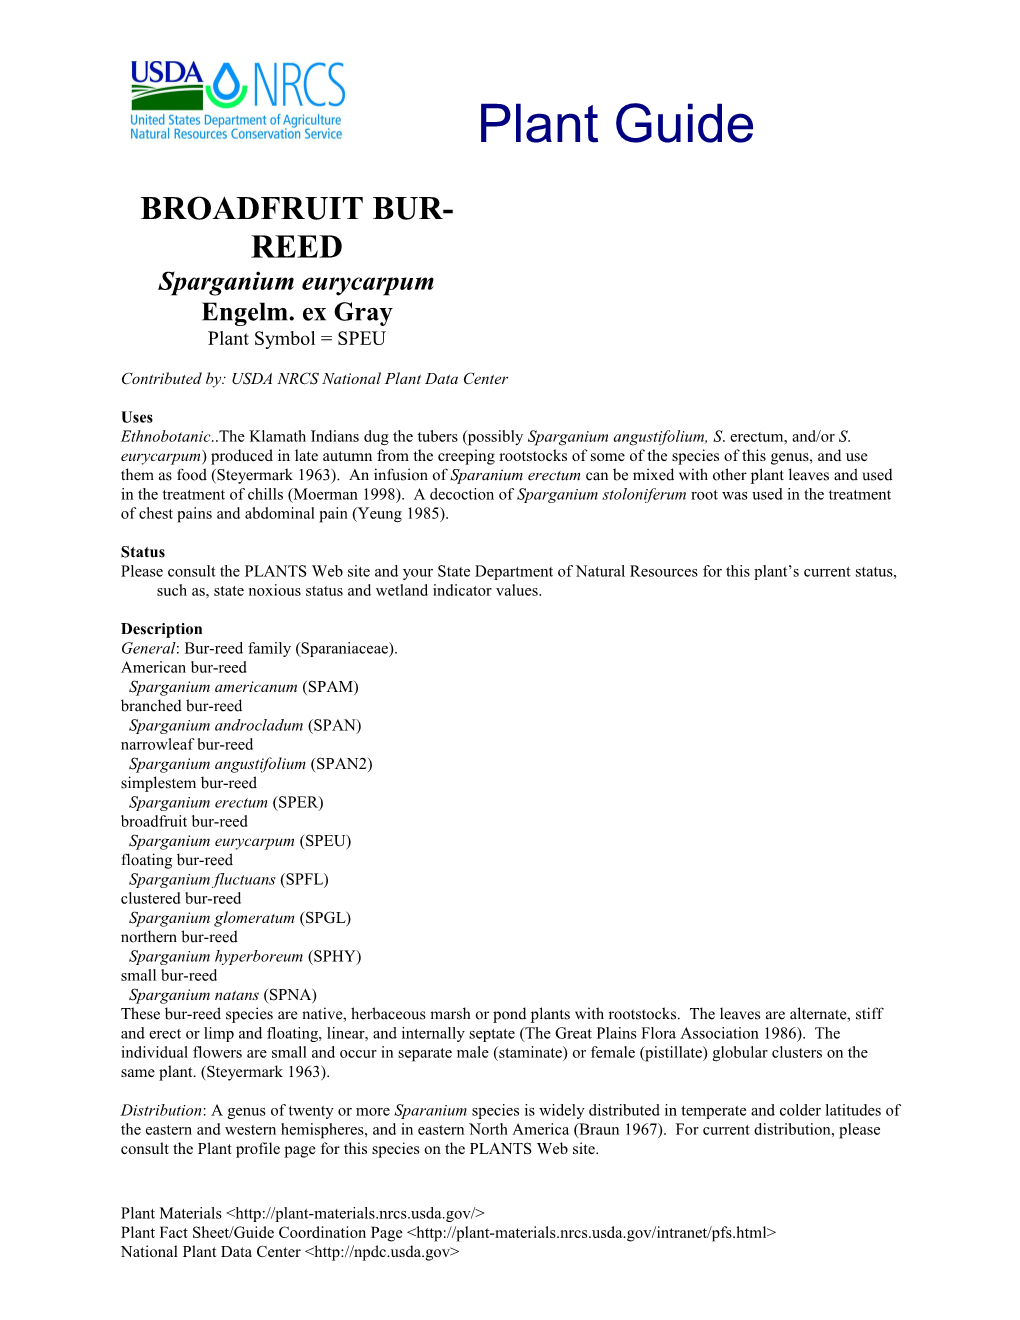 Broadfruit Bur-Reed